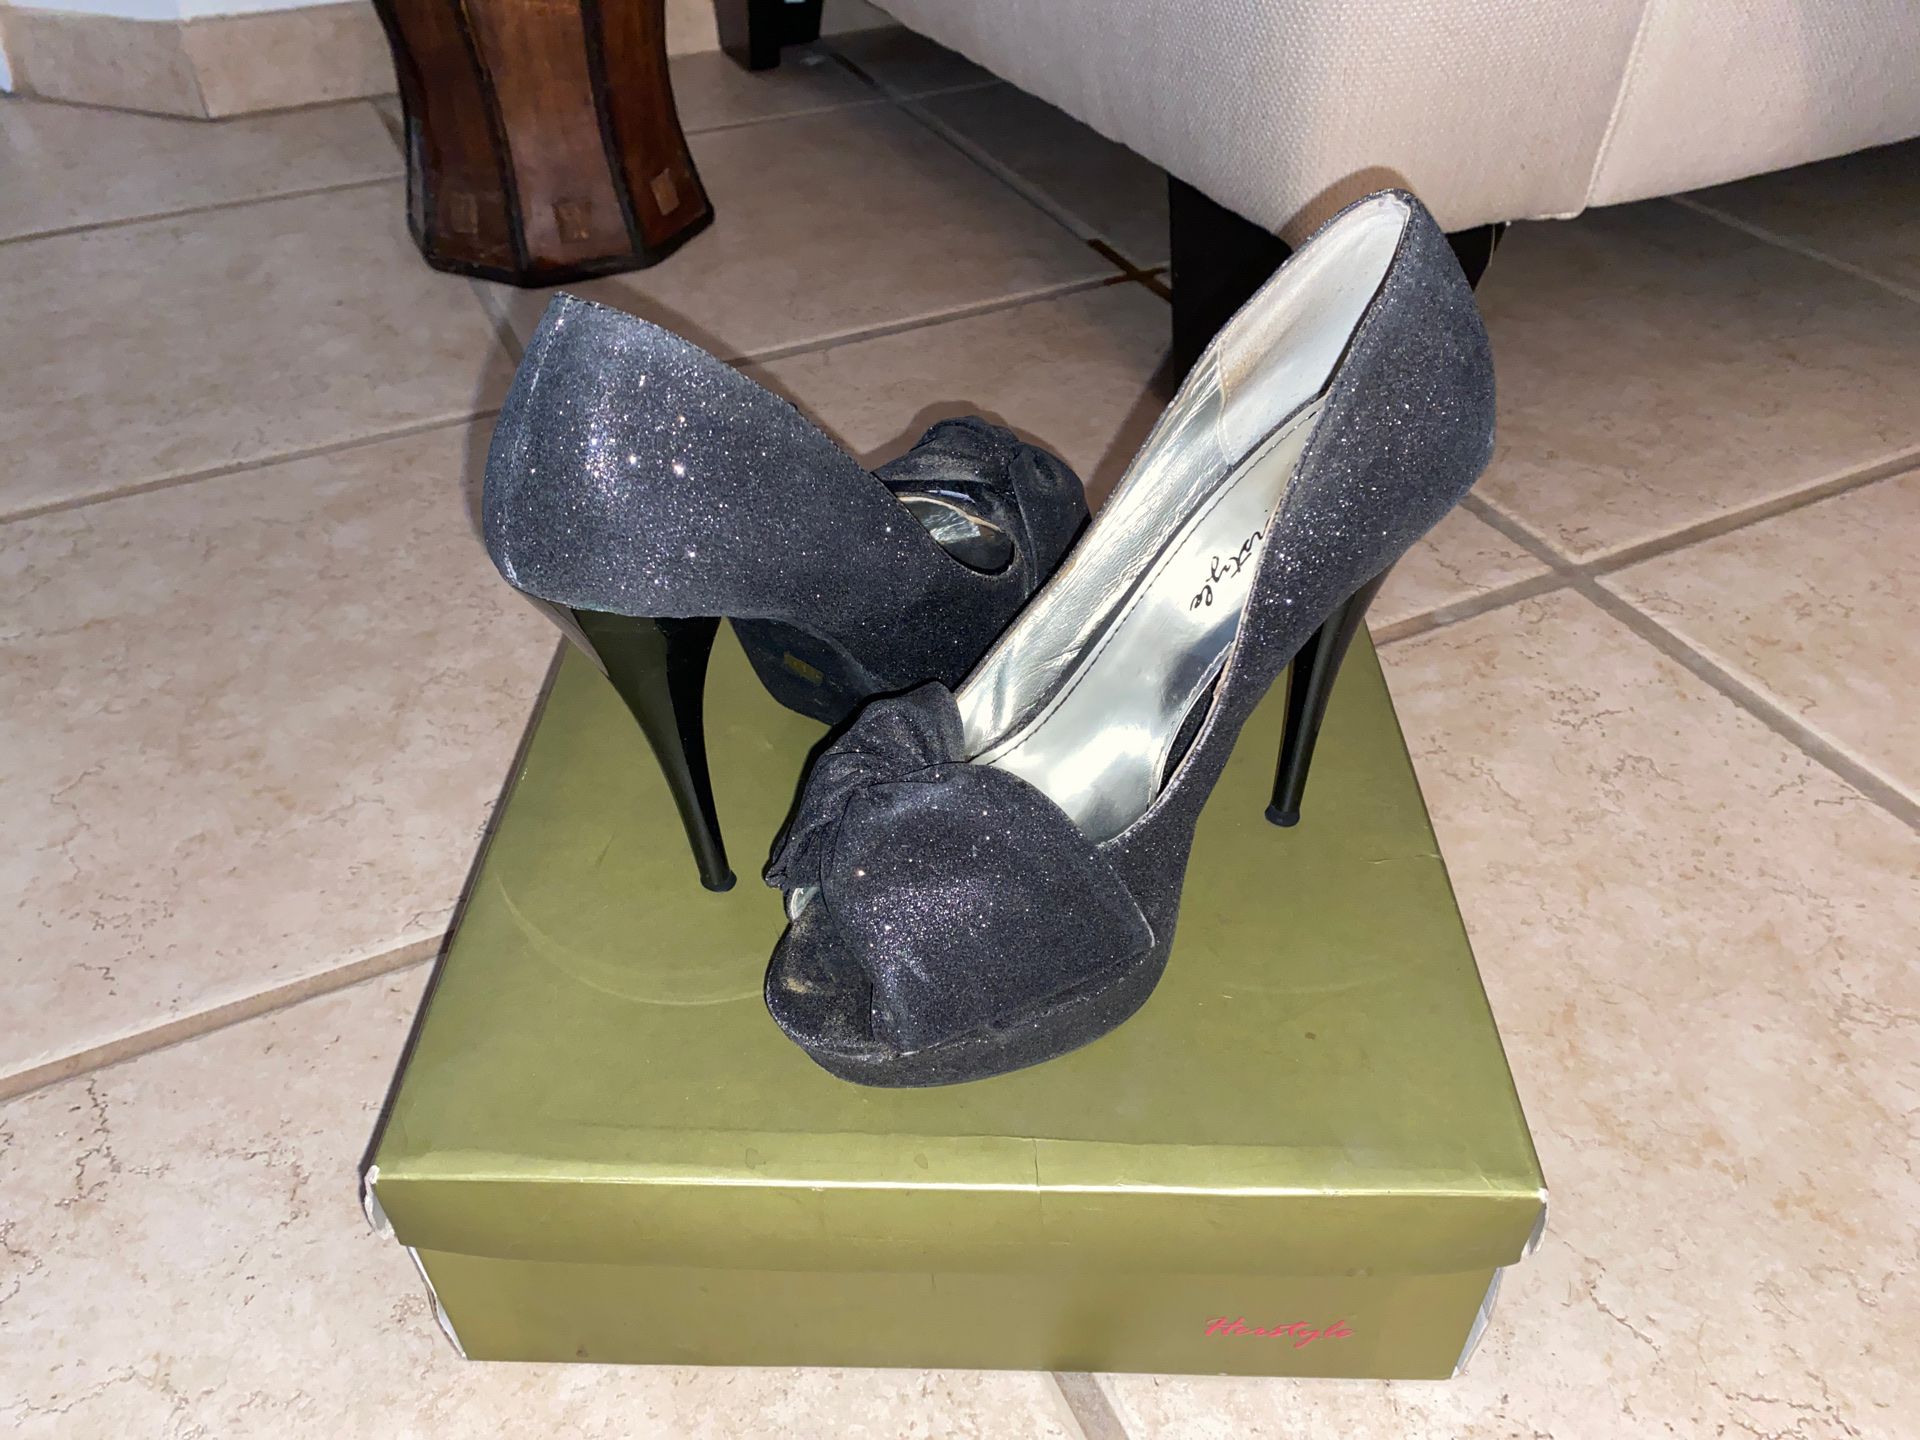 Women’s size 9 black heels